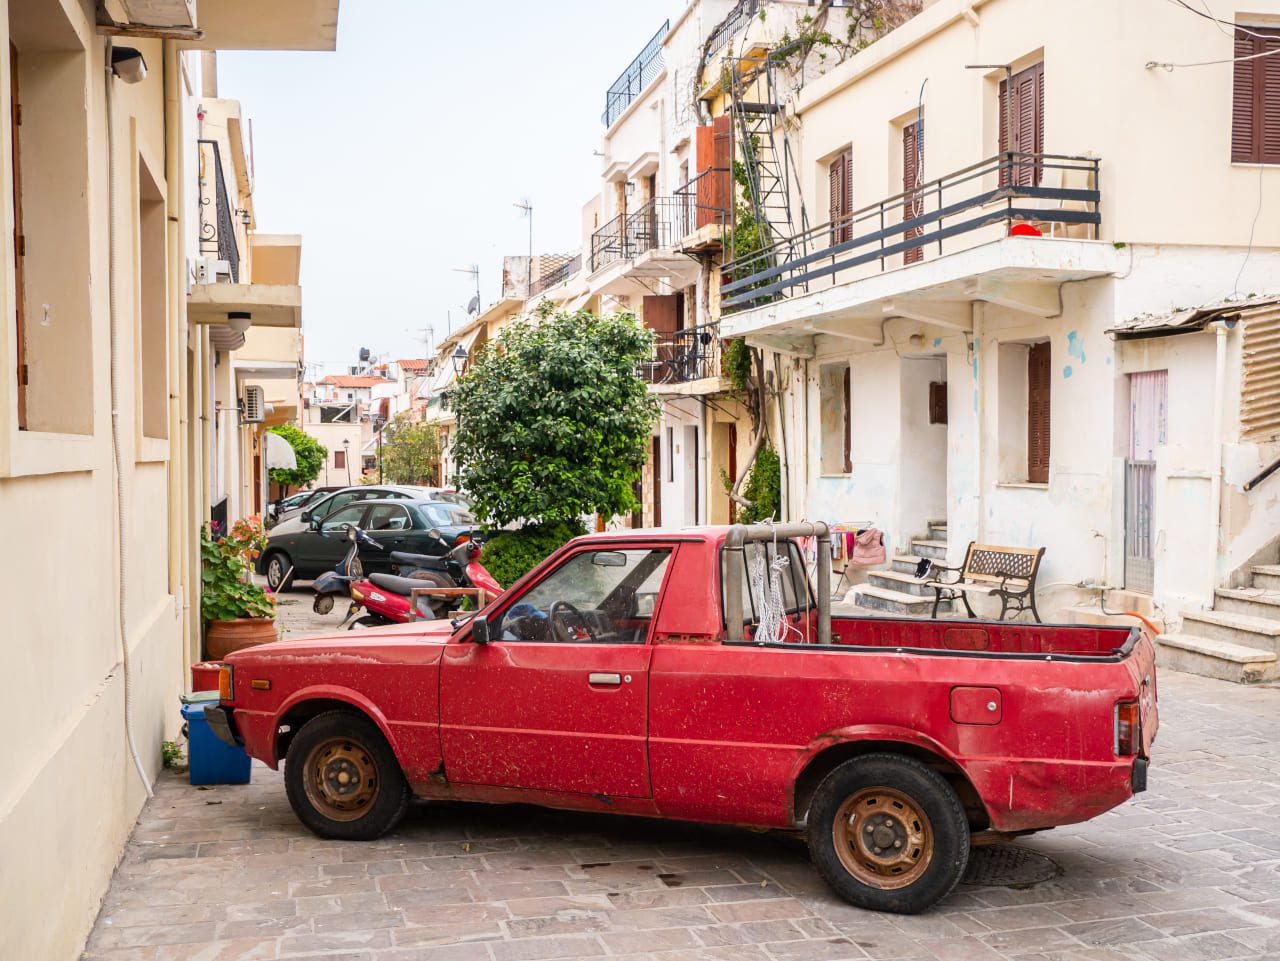 Kreta czerwony samochód uliczka